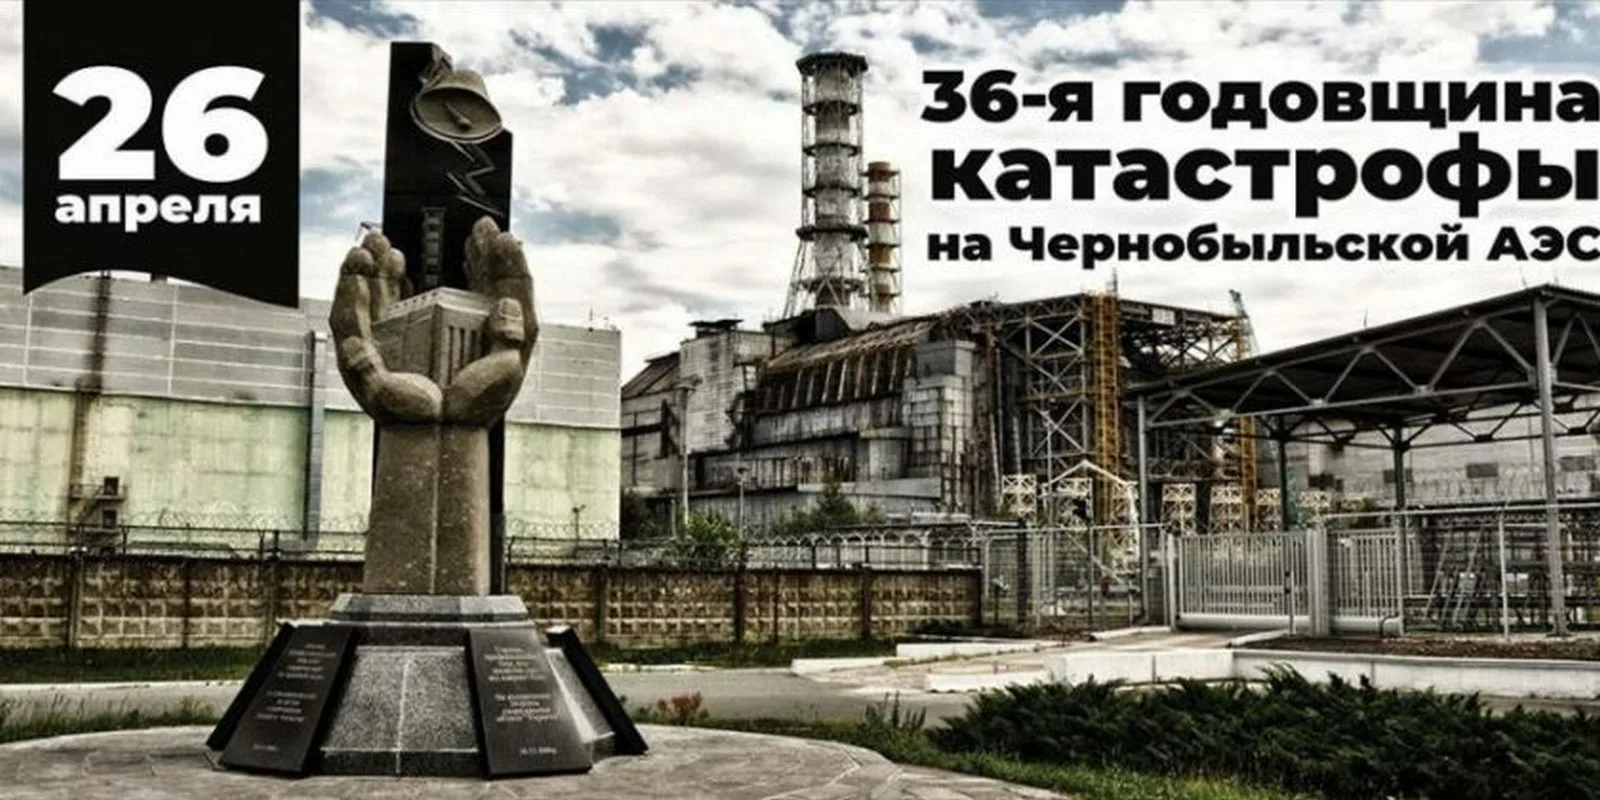 Авария на Чернобыльской АЭС. 26 Апреля 1986 года, Припять. Чернобыль 1986 год 26 апреля. Чернобыльская АЭС катастрофа 26 апреля 1986. 26 Апреля – день участников ликвидации аварии на ЧАЭС.